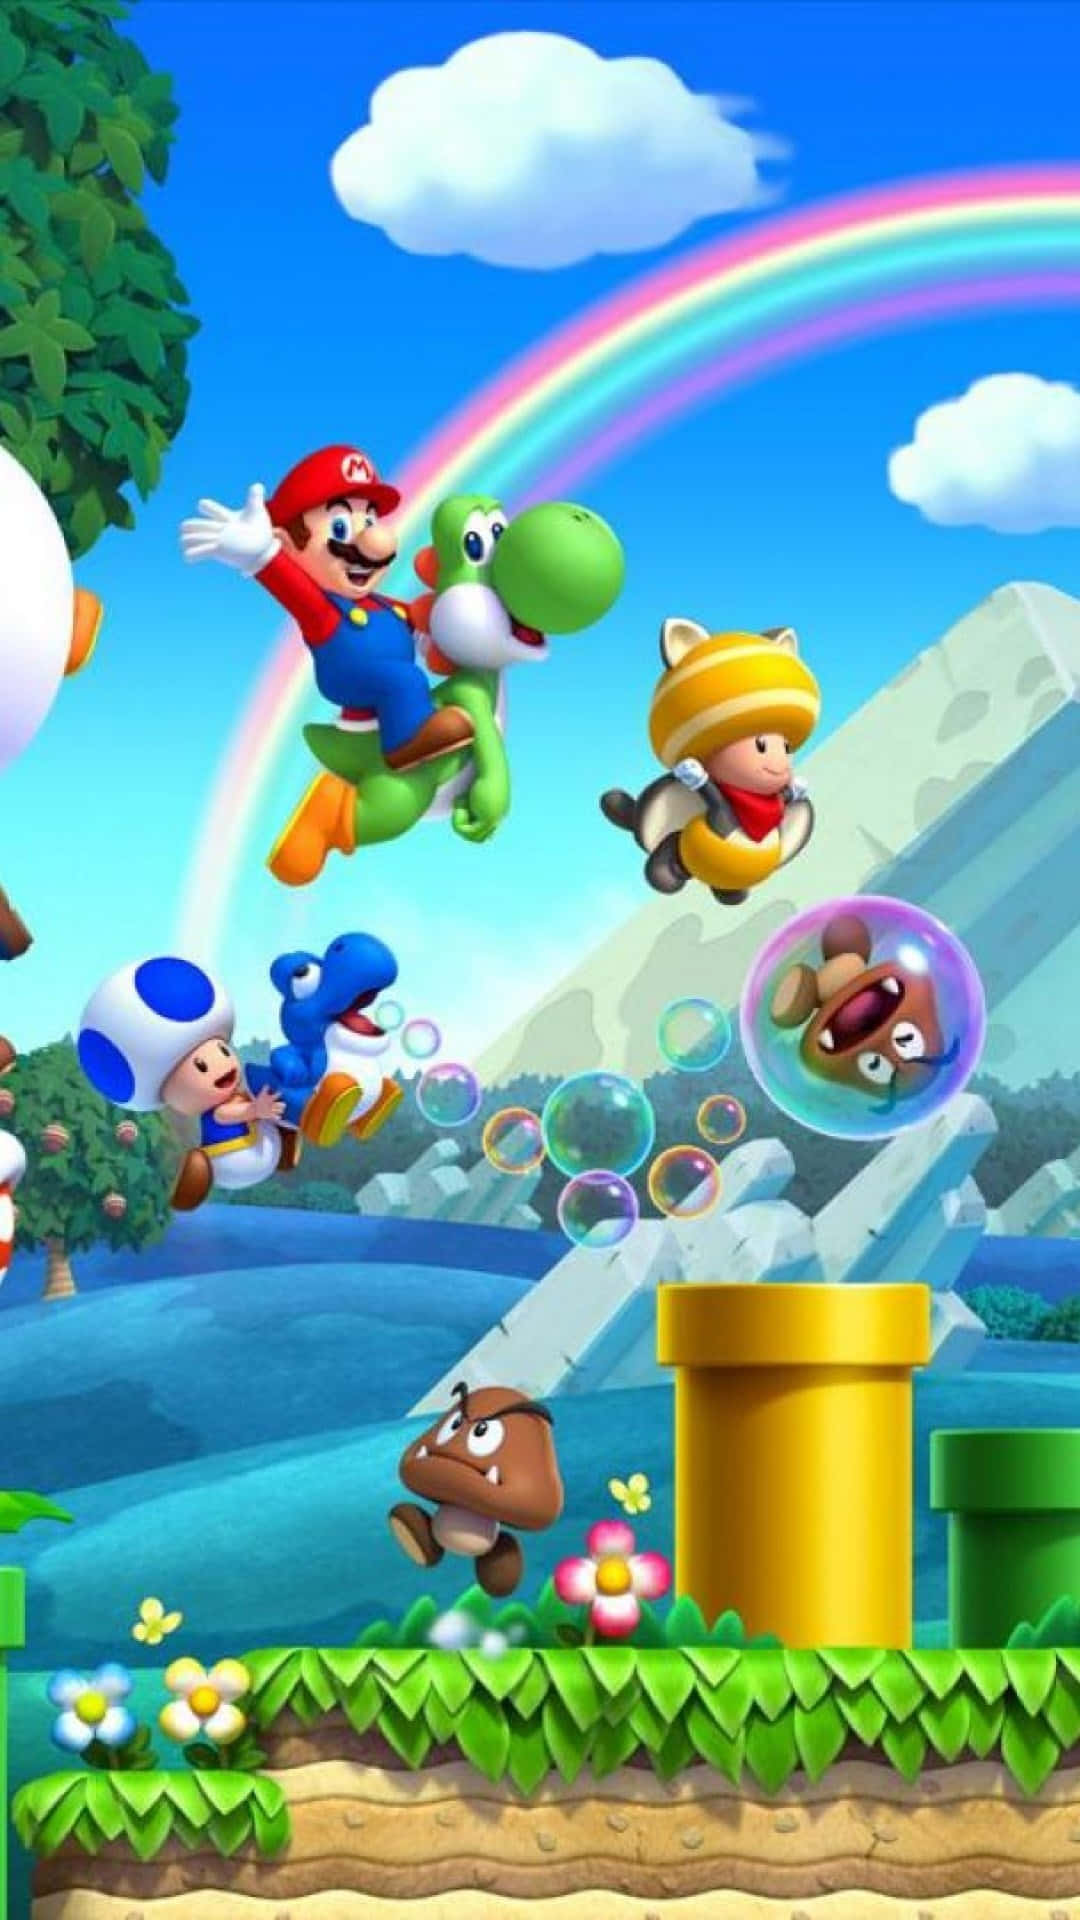 Fejre Super Mario med denne eksklusive iPhone-sag. Wallpaper